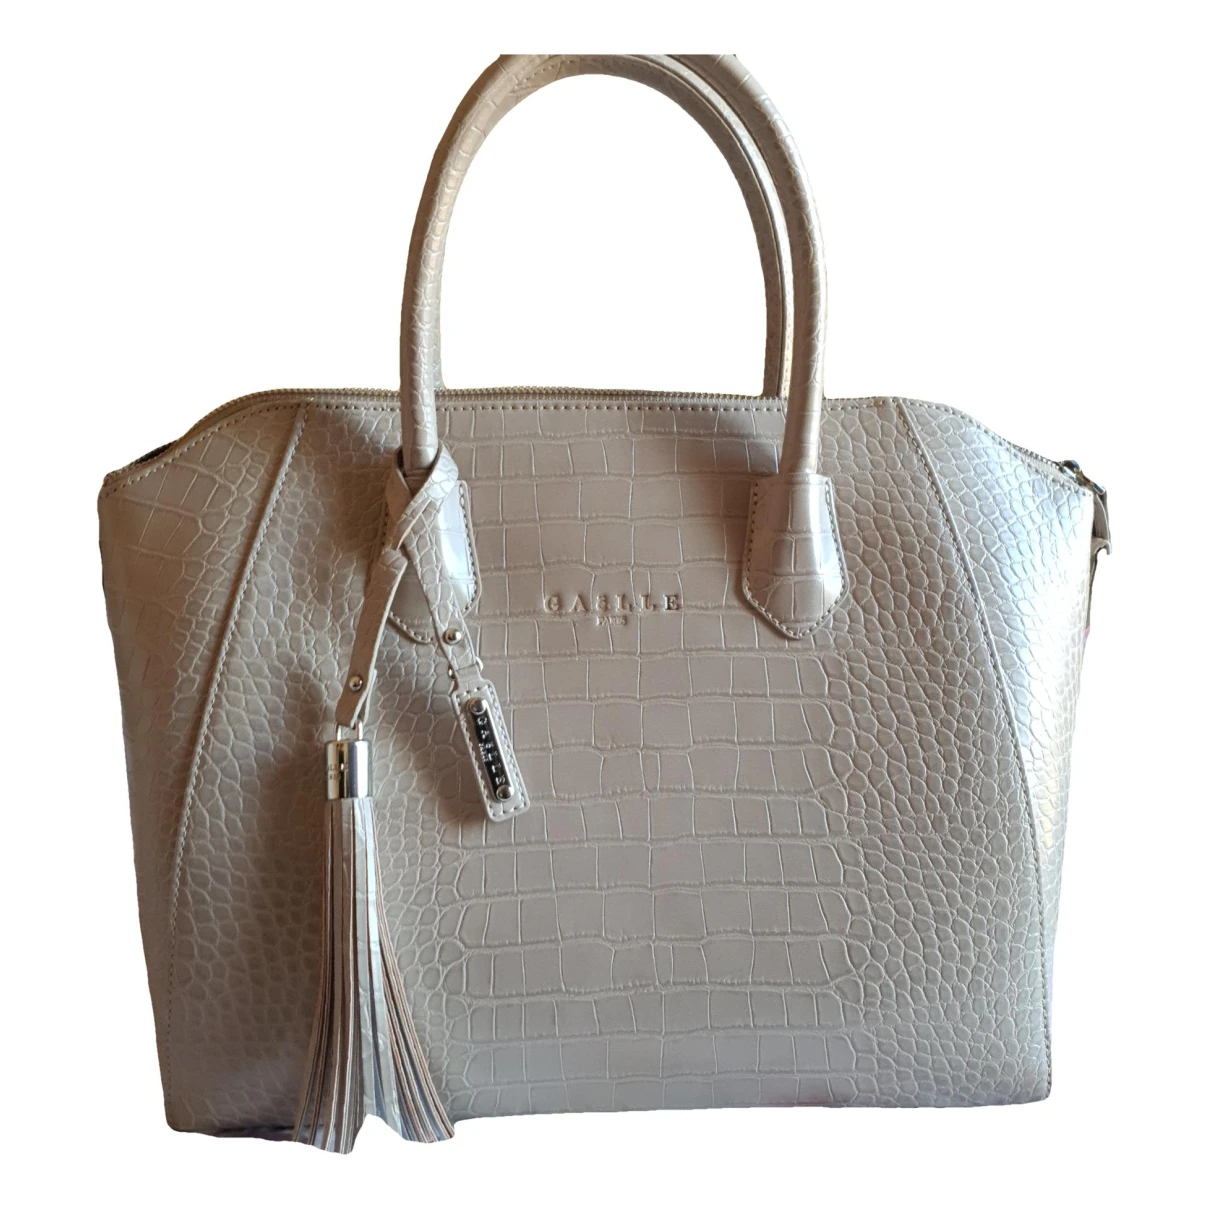 Pre-owned Gaelle Paris Vegan Leather Handbag In Beige